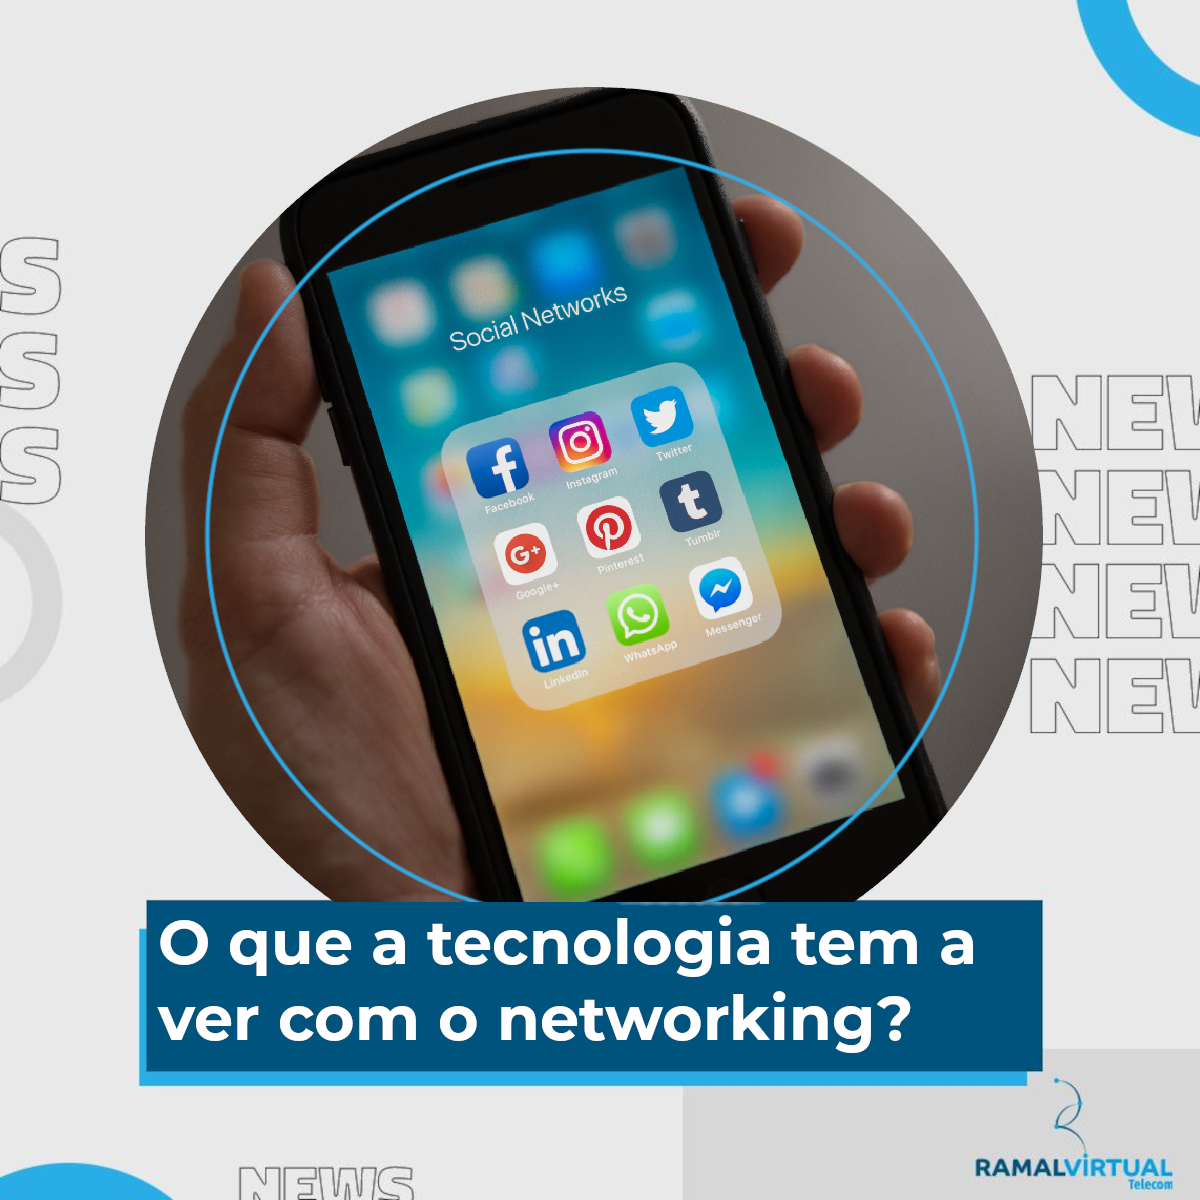 [O que a tecnologia tem a ver com o networking?]